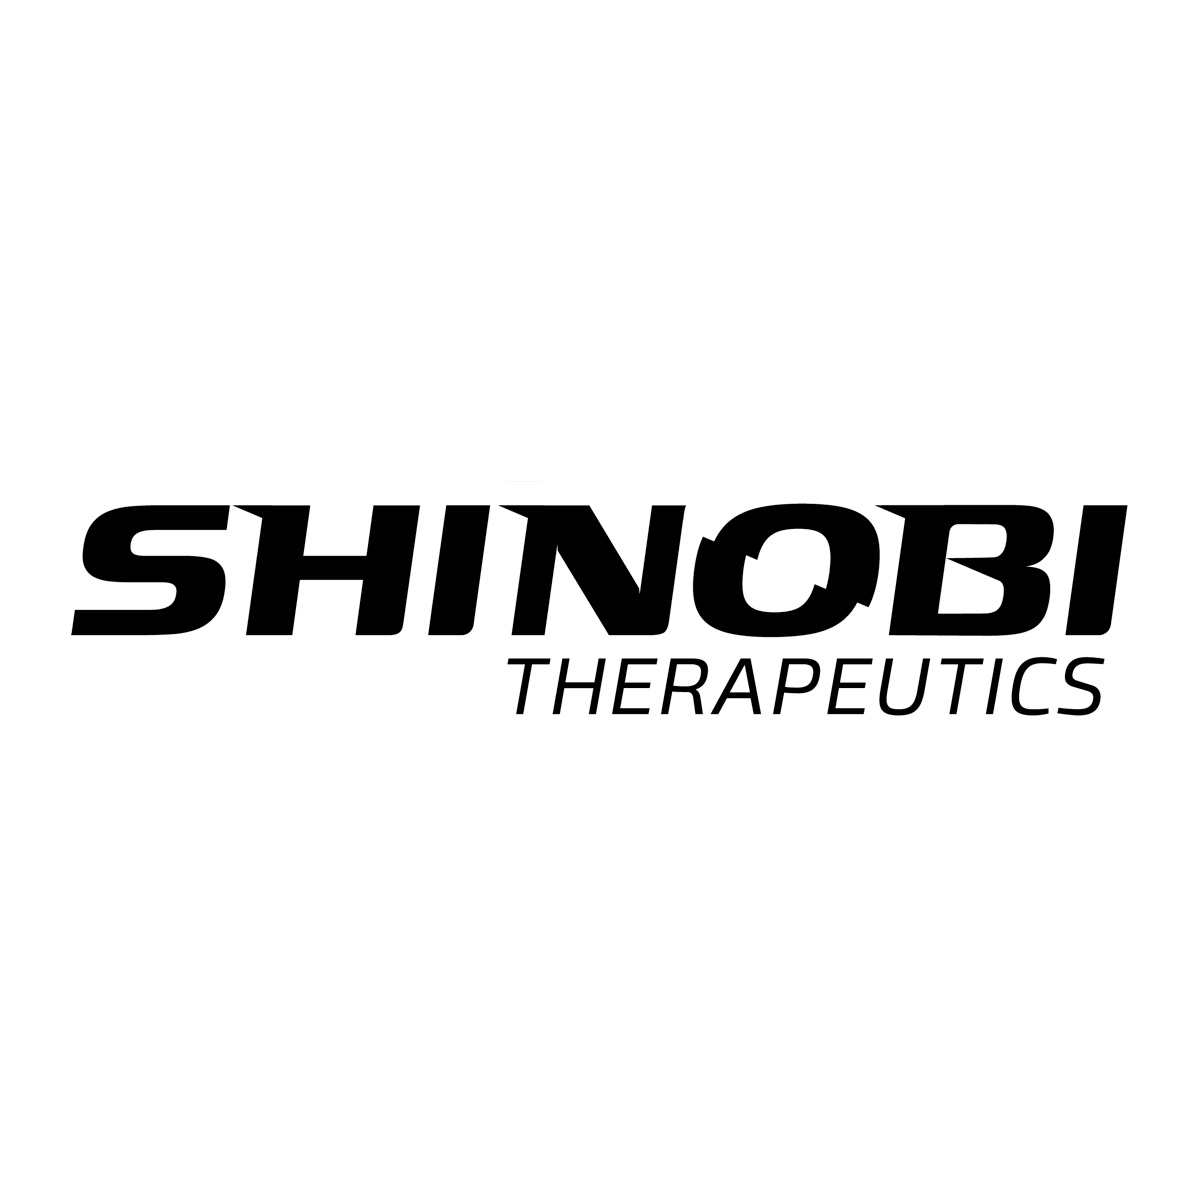 Shinobi Therapeutics